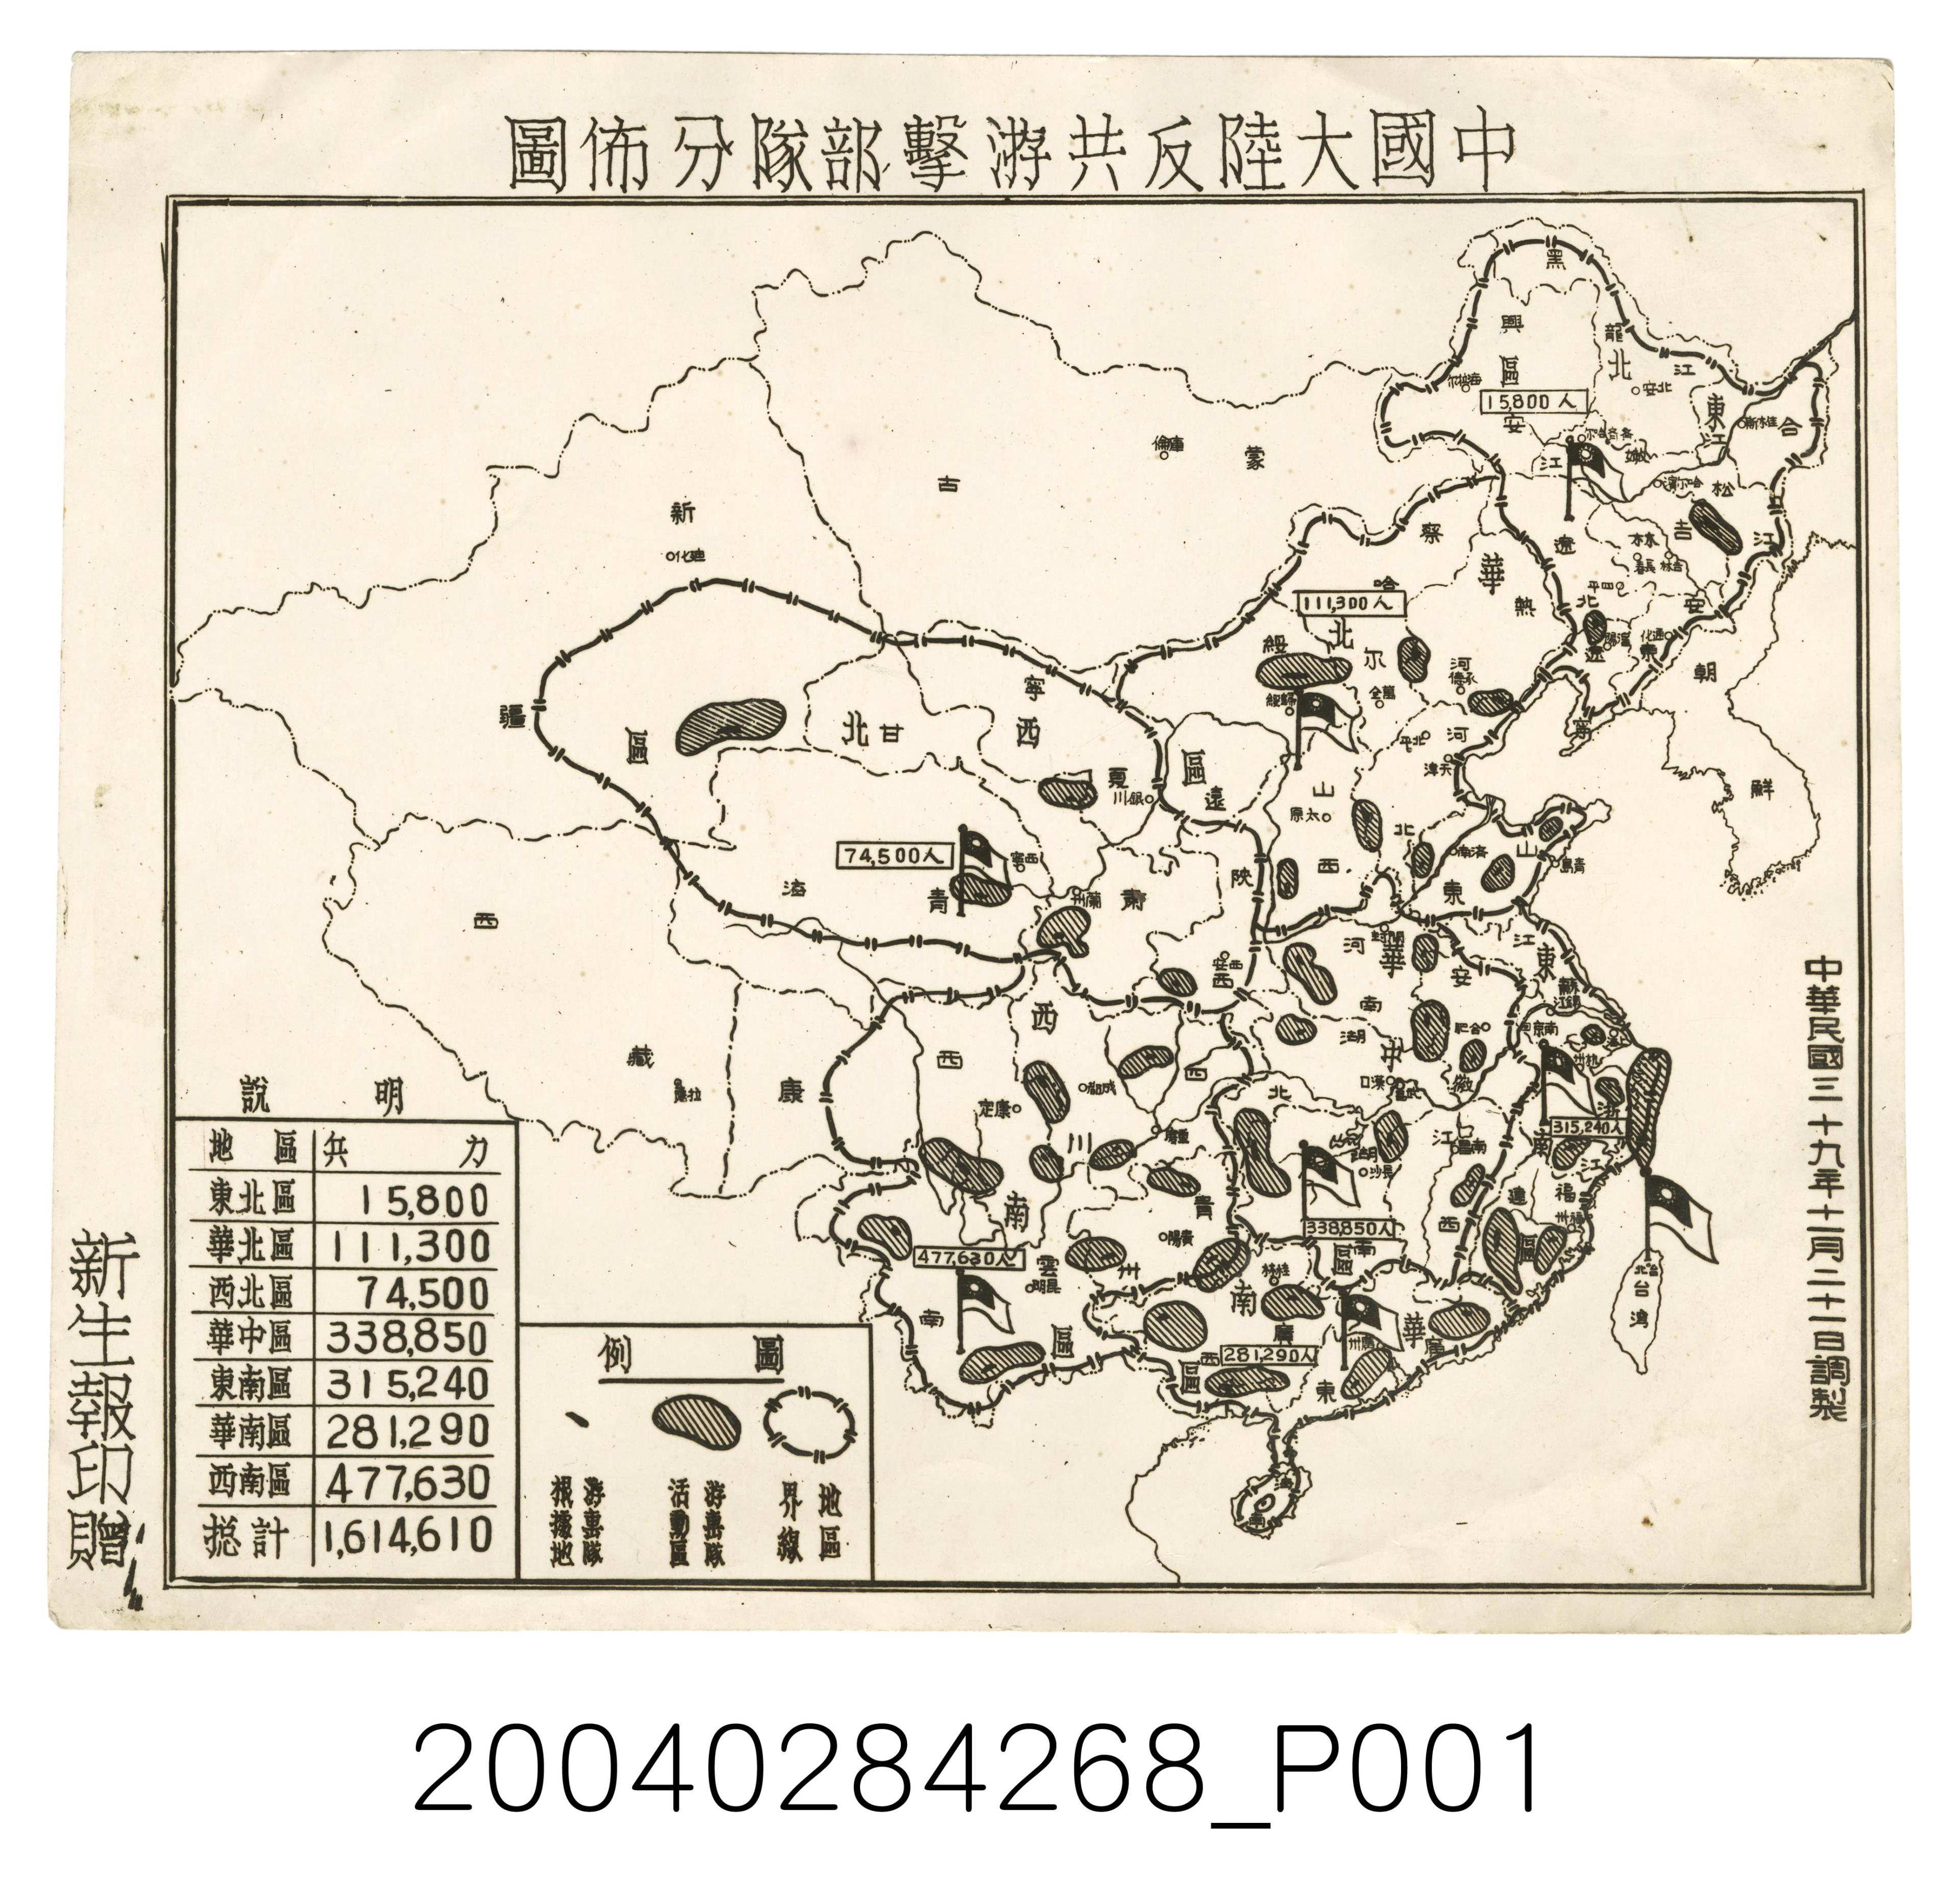 新生報〈中國大陸反共游擊部隊分佈圖〉 (共1張)